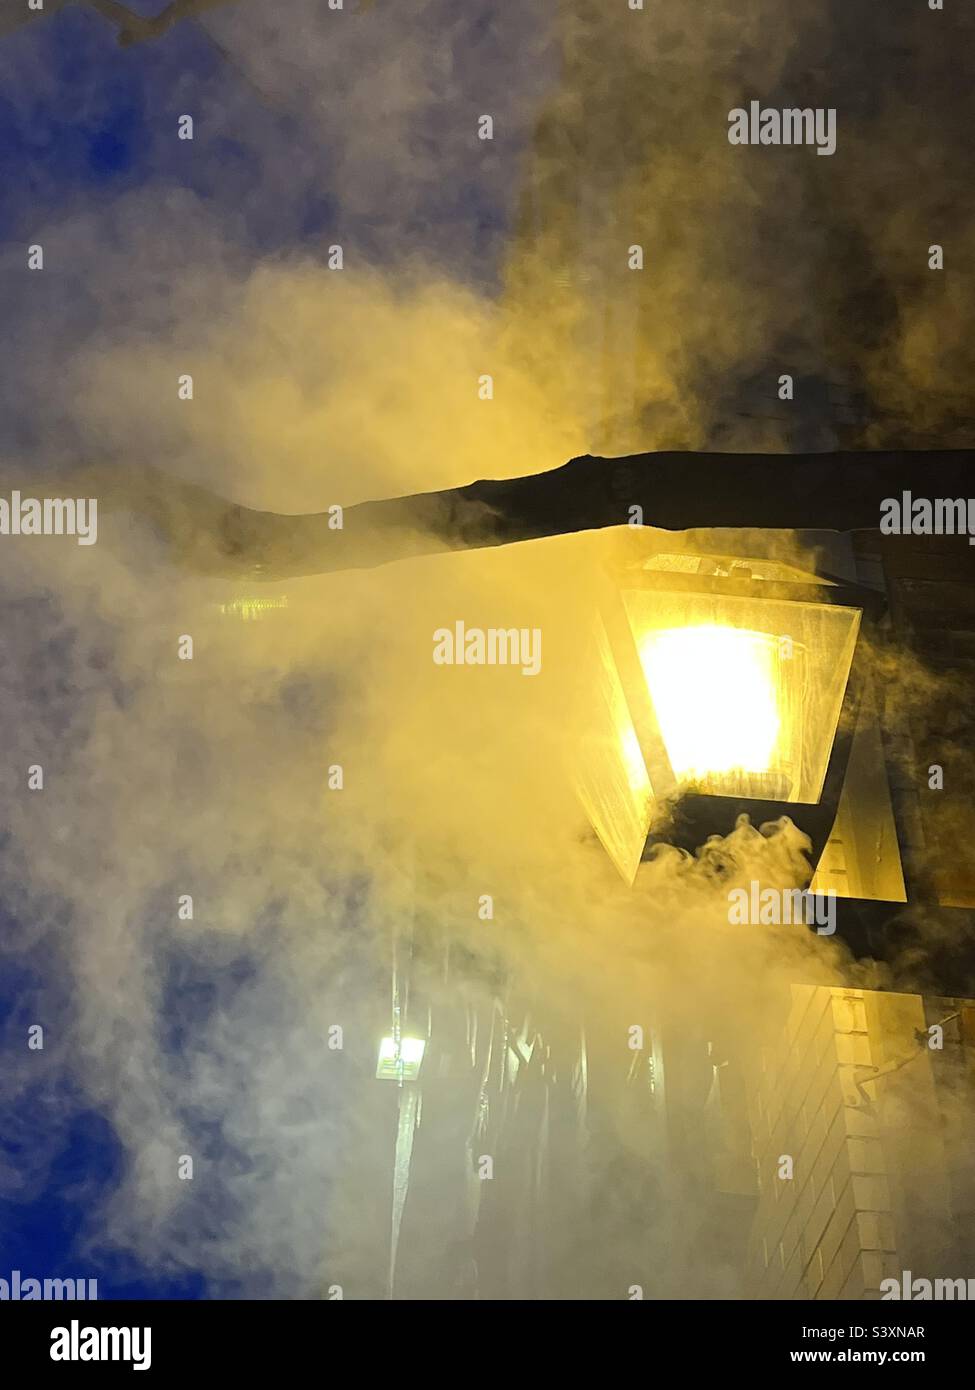 Nachtlaterne in Rauch Stockfoto